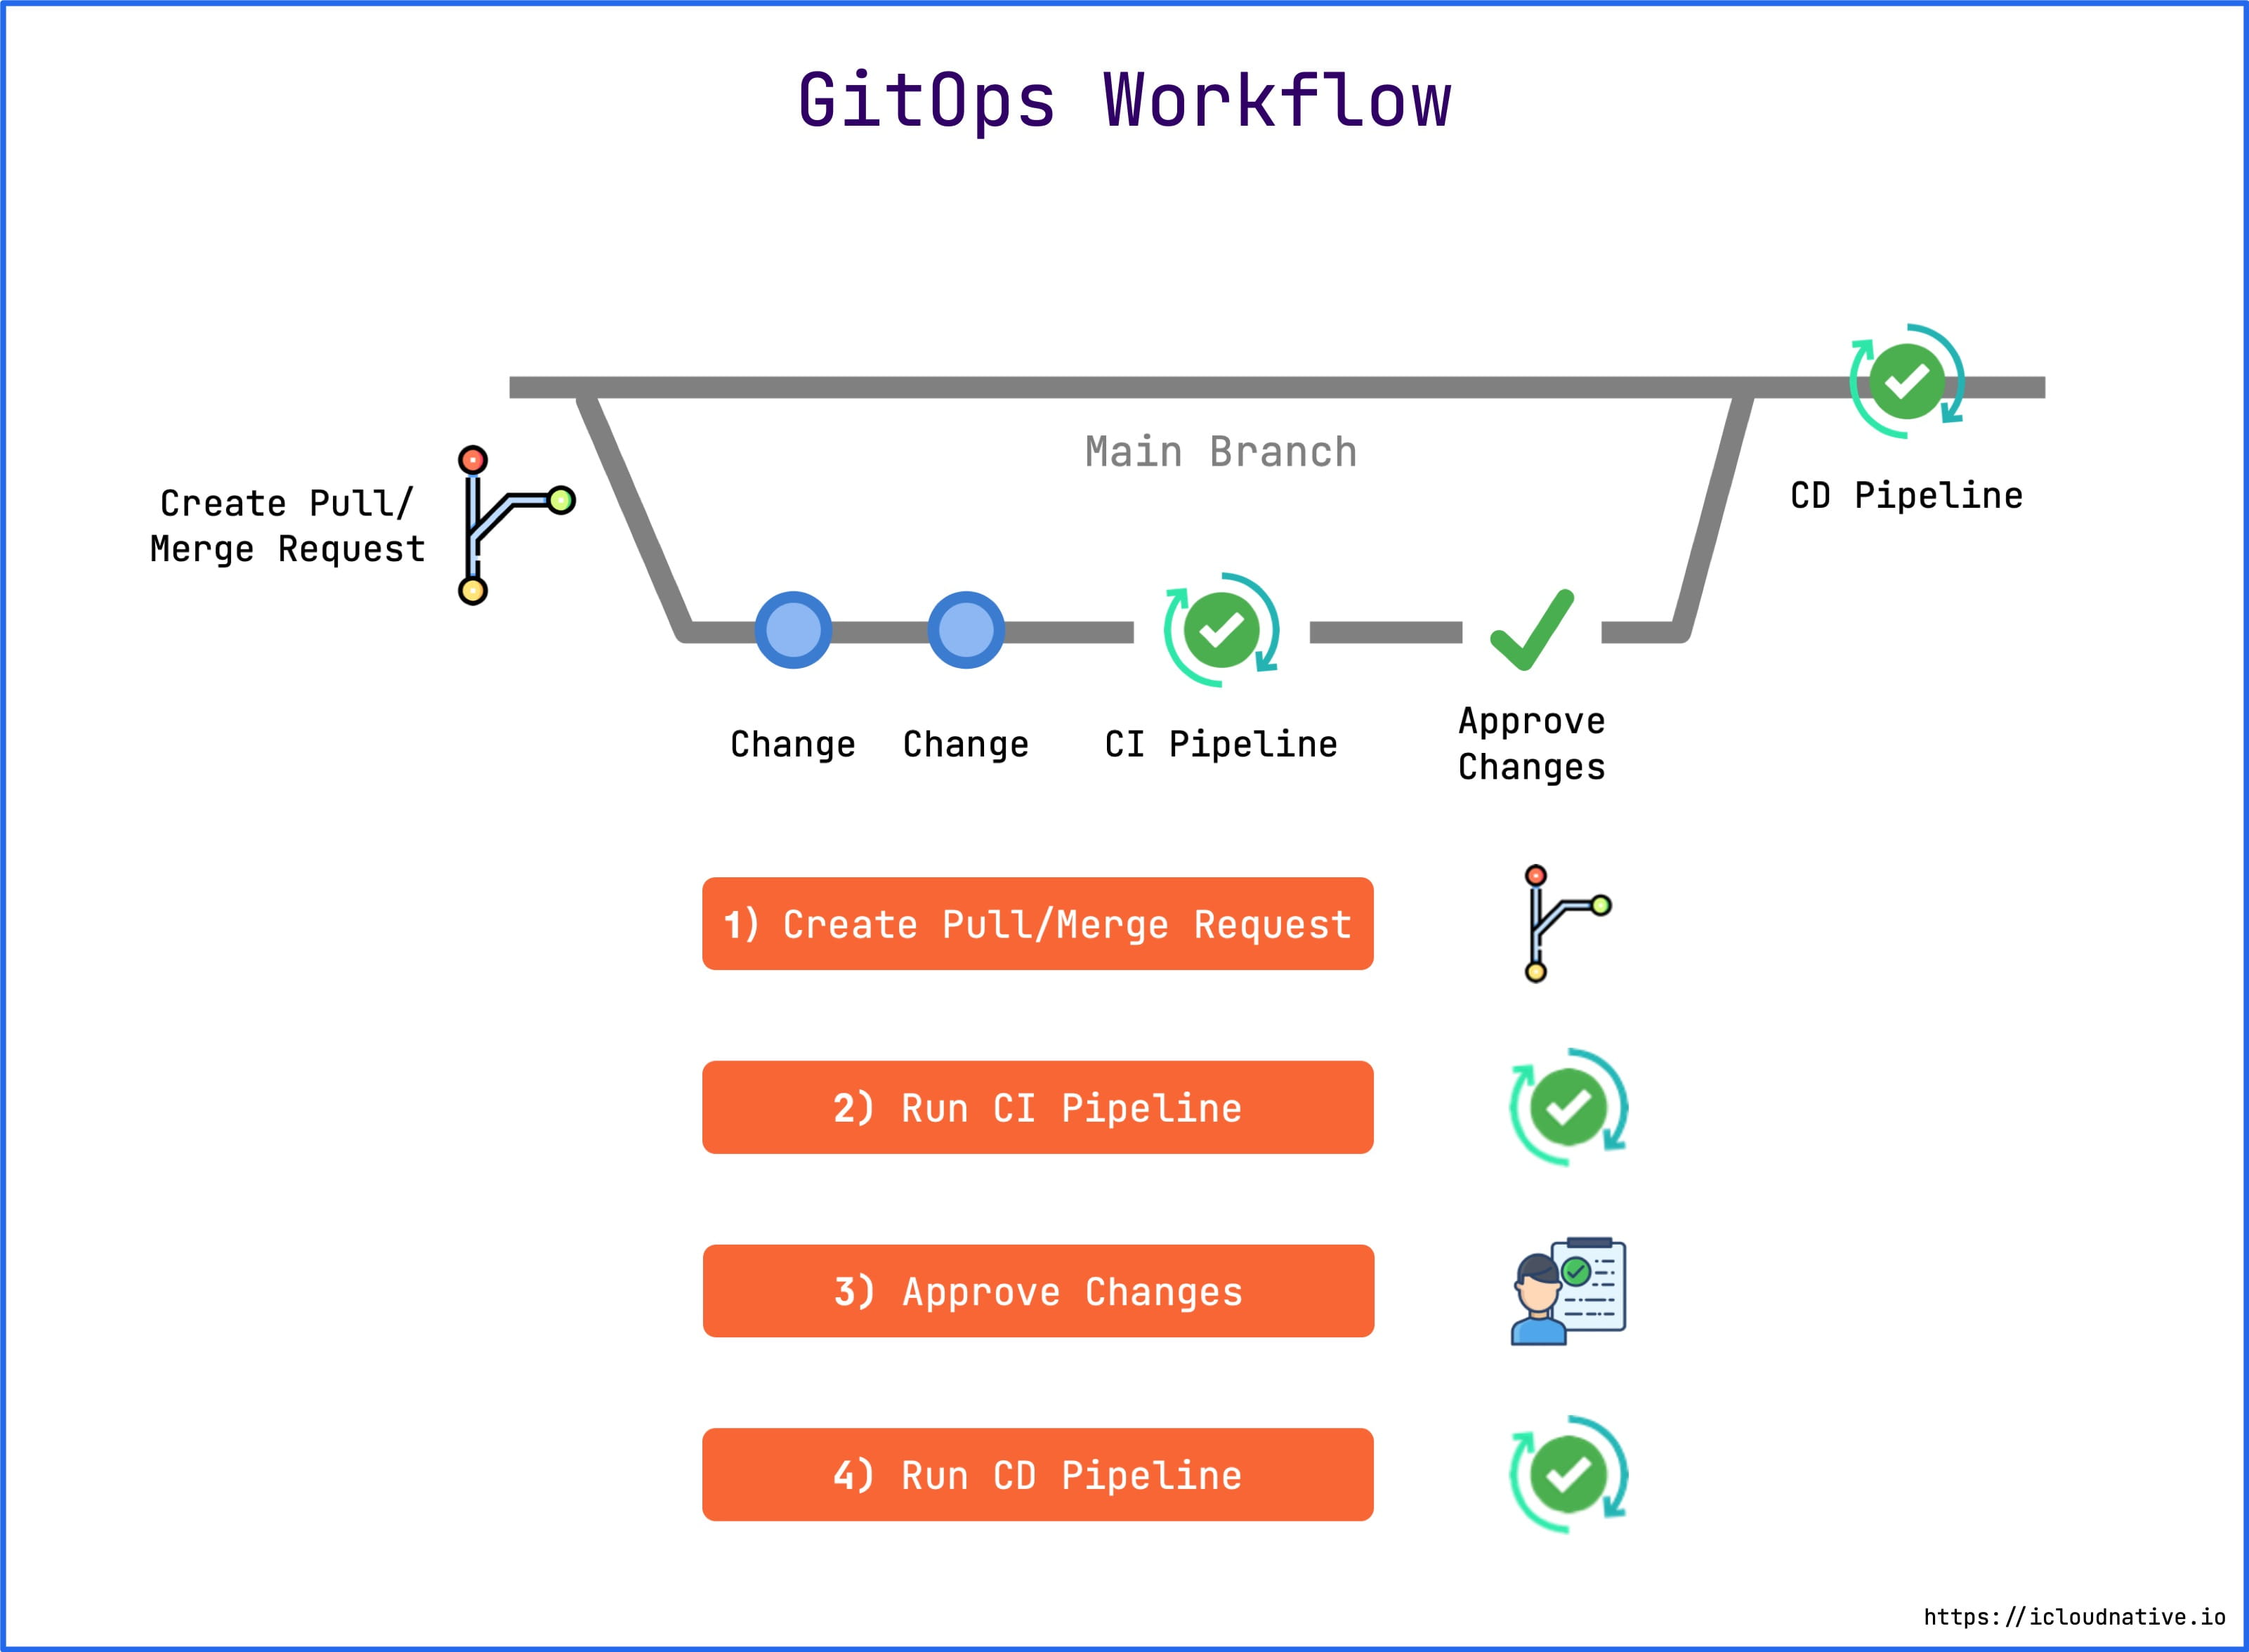 GitOps workflow